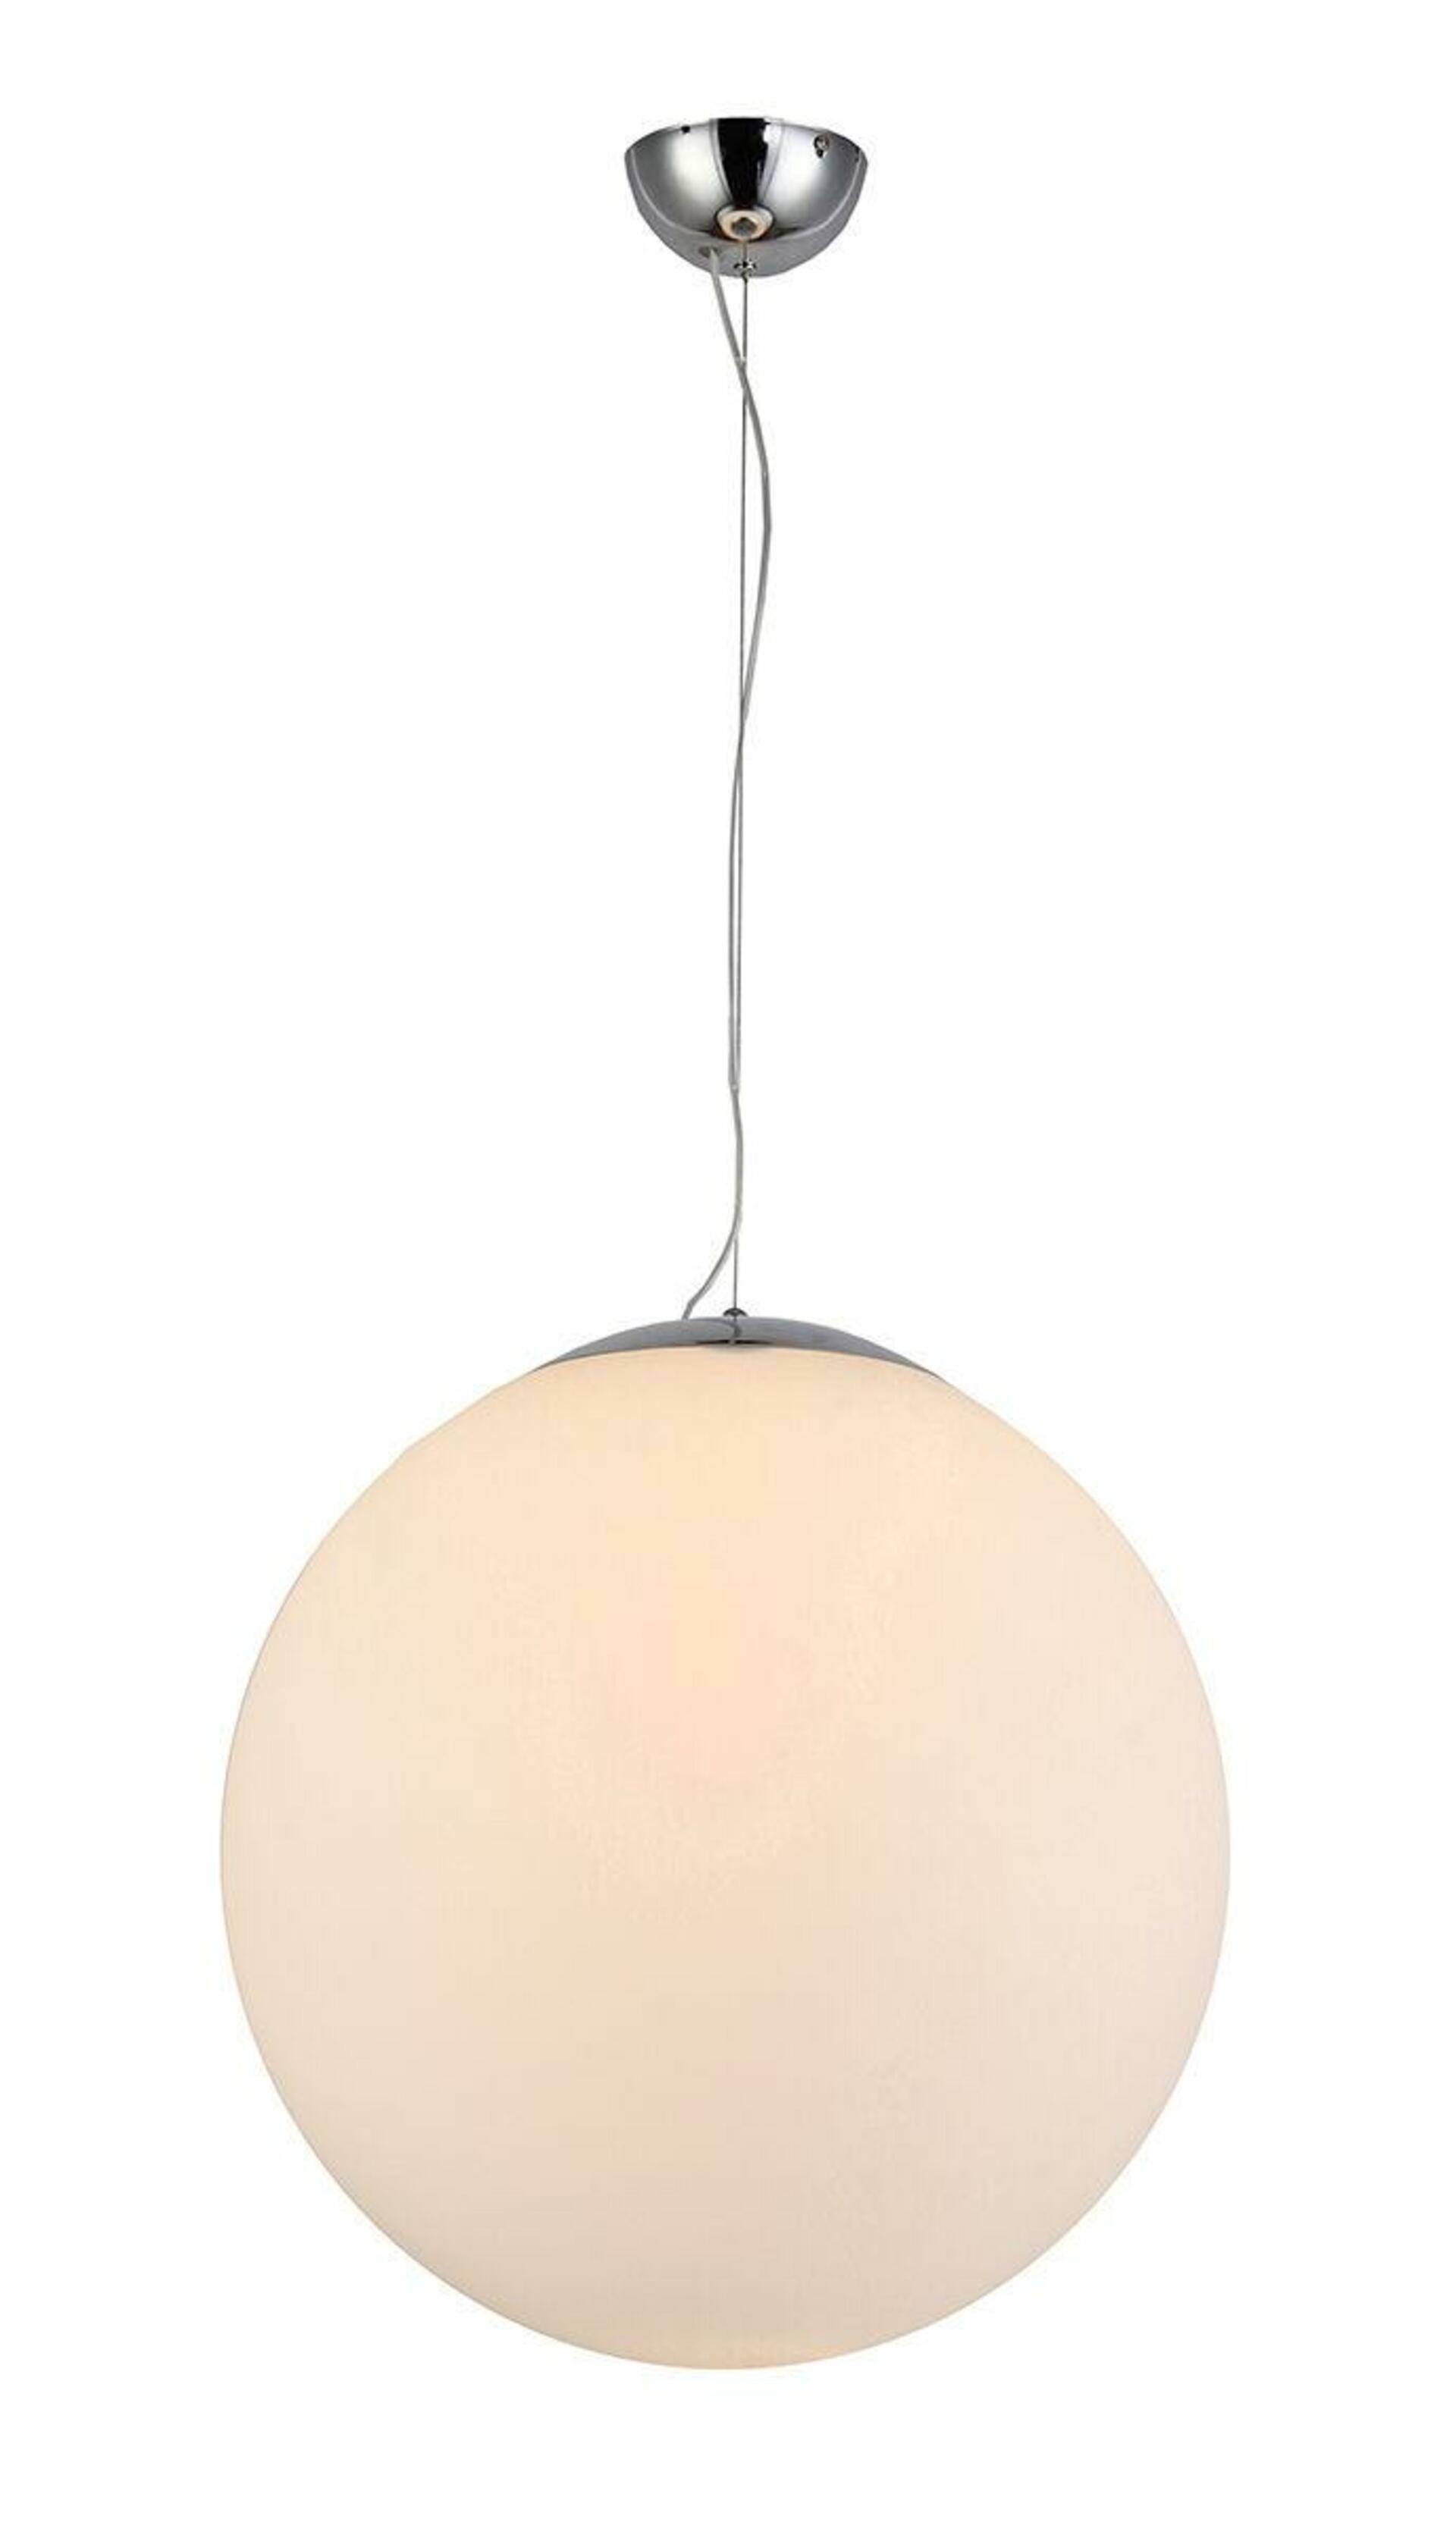 AZzardo AZ2516 závěsné svítidlo White ball 30